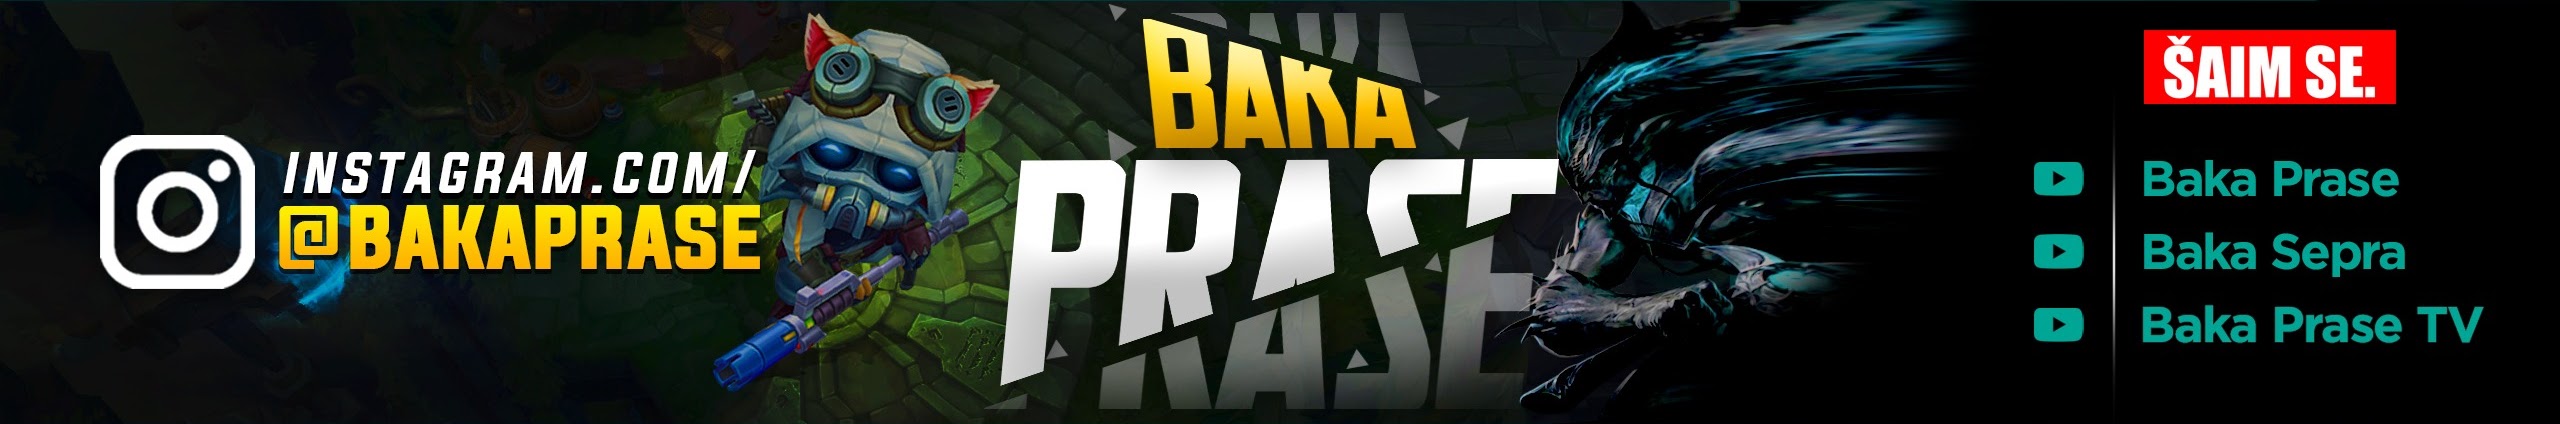 Baka Prase - On BiH Link